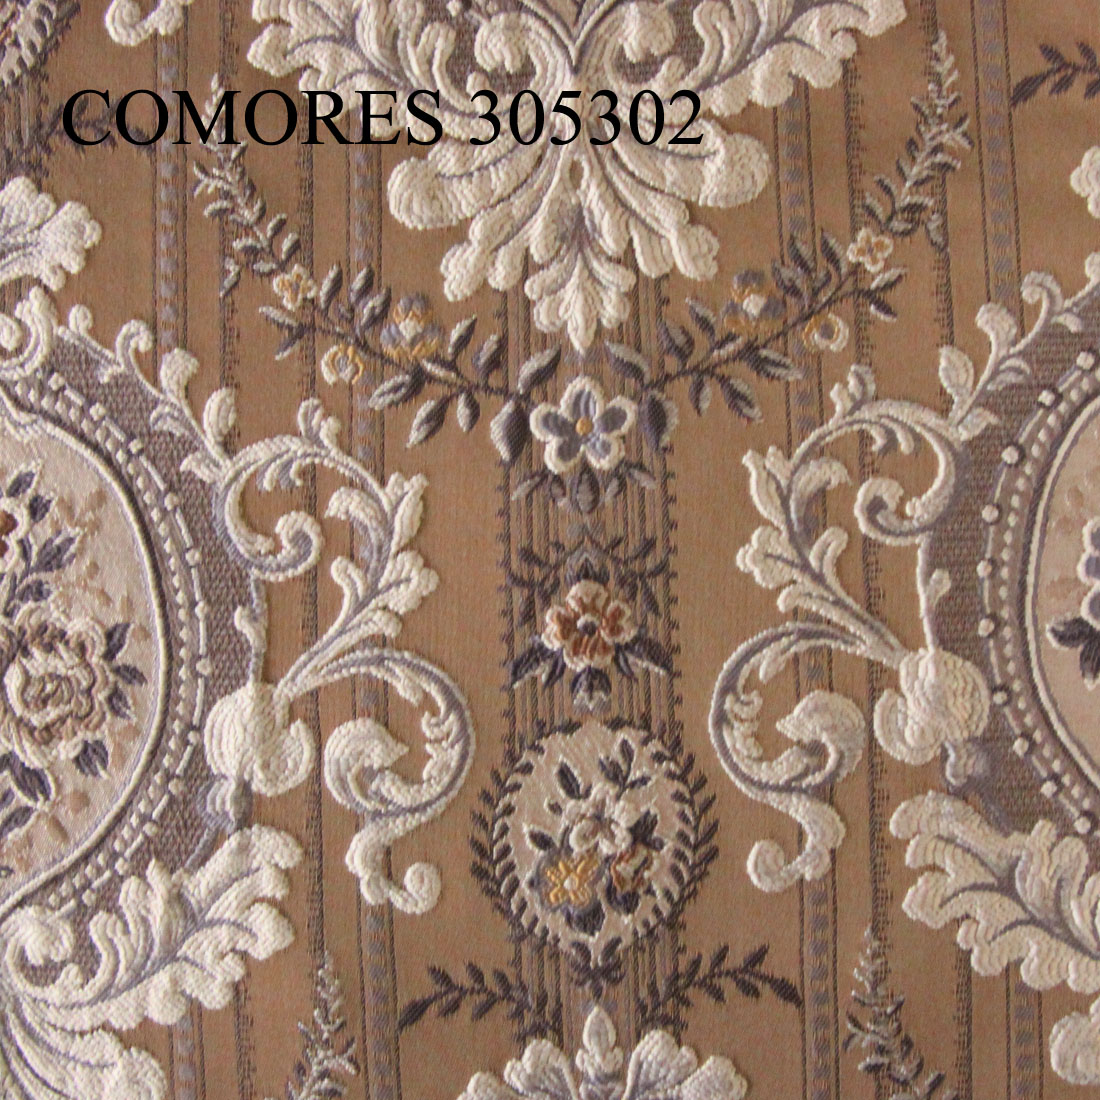 COMORES 305302